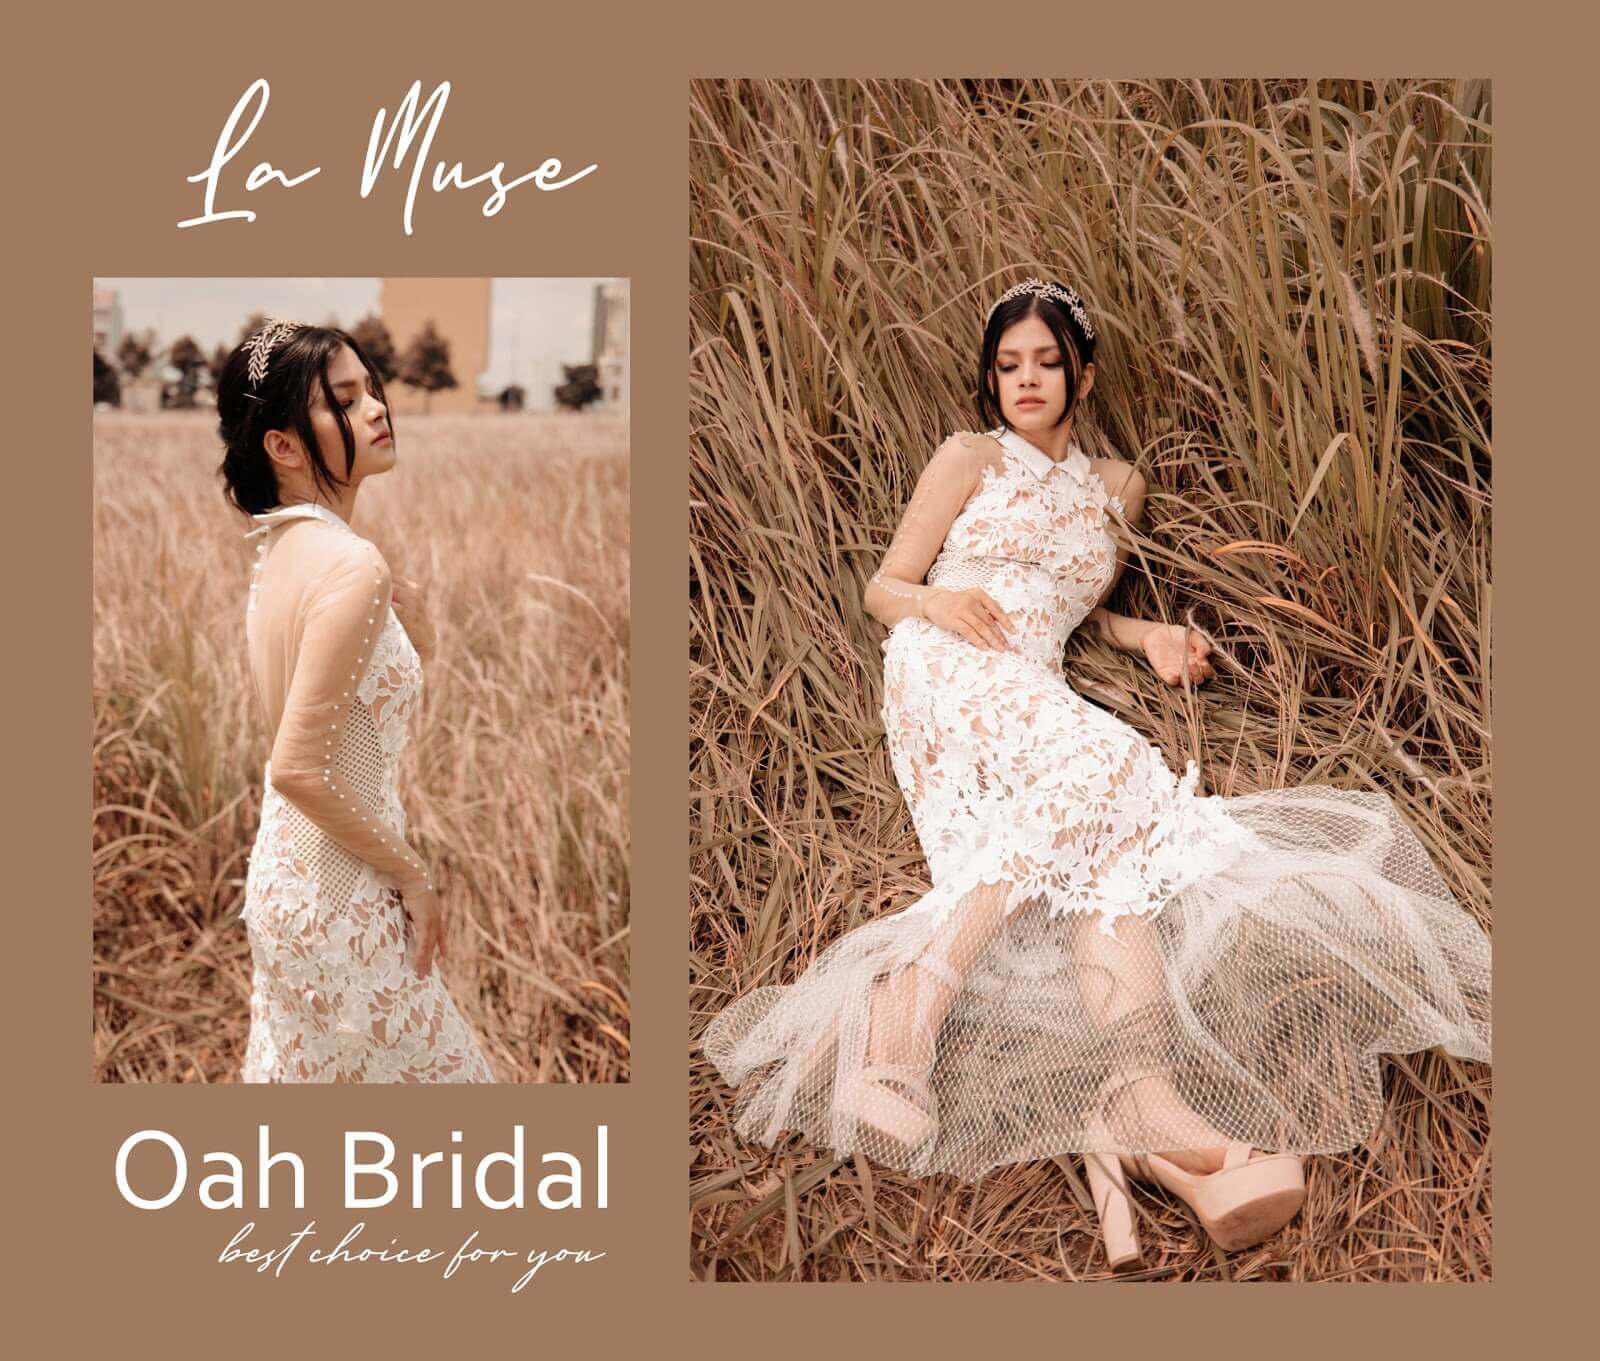 Wedding dress designed by OAH Bridal - WebSite